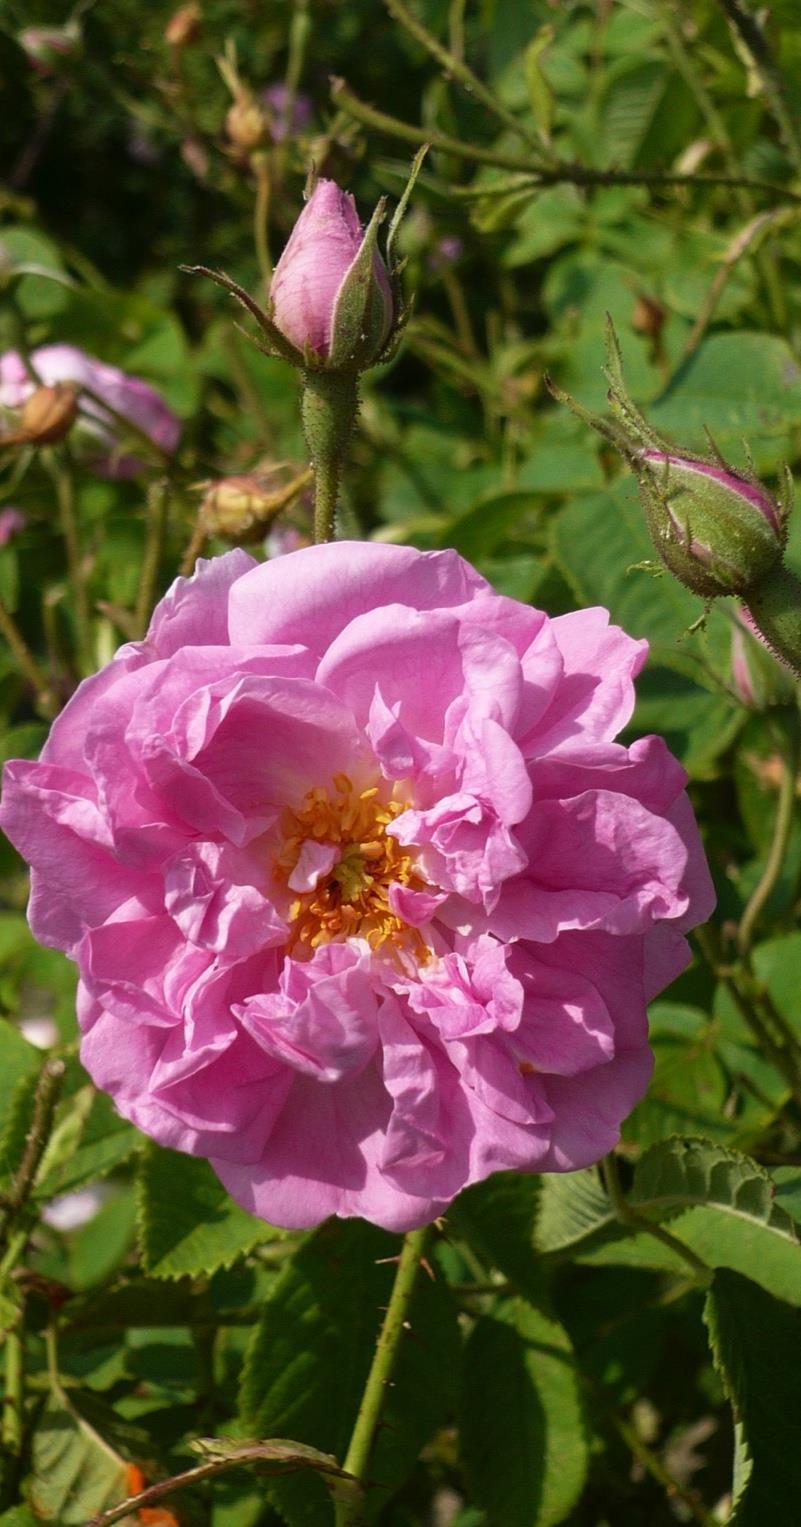 Rose Stammpflanze: Familie: Herkunft: Duftprofil: Gewinnung: Pflanzenteil: Rosa damascena Rosaceae